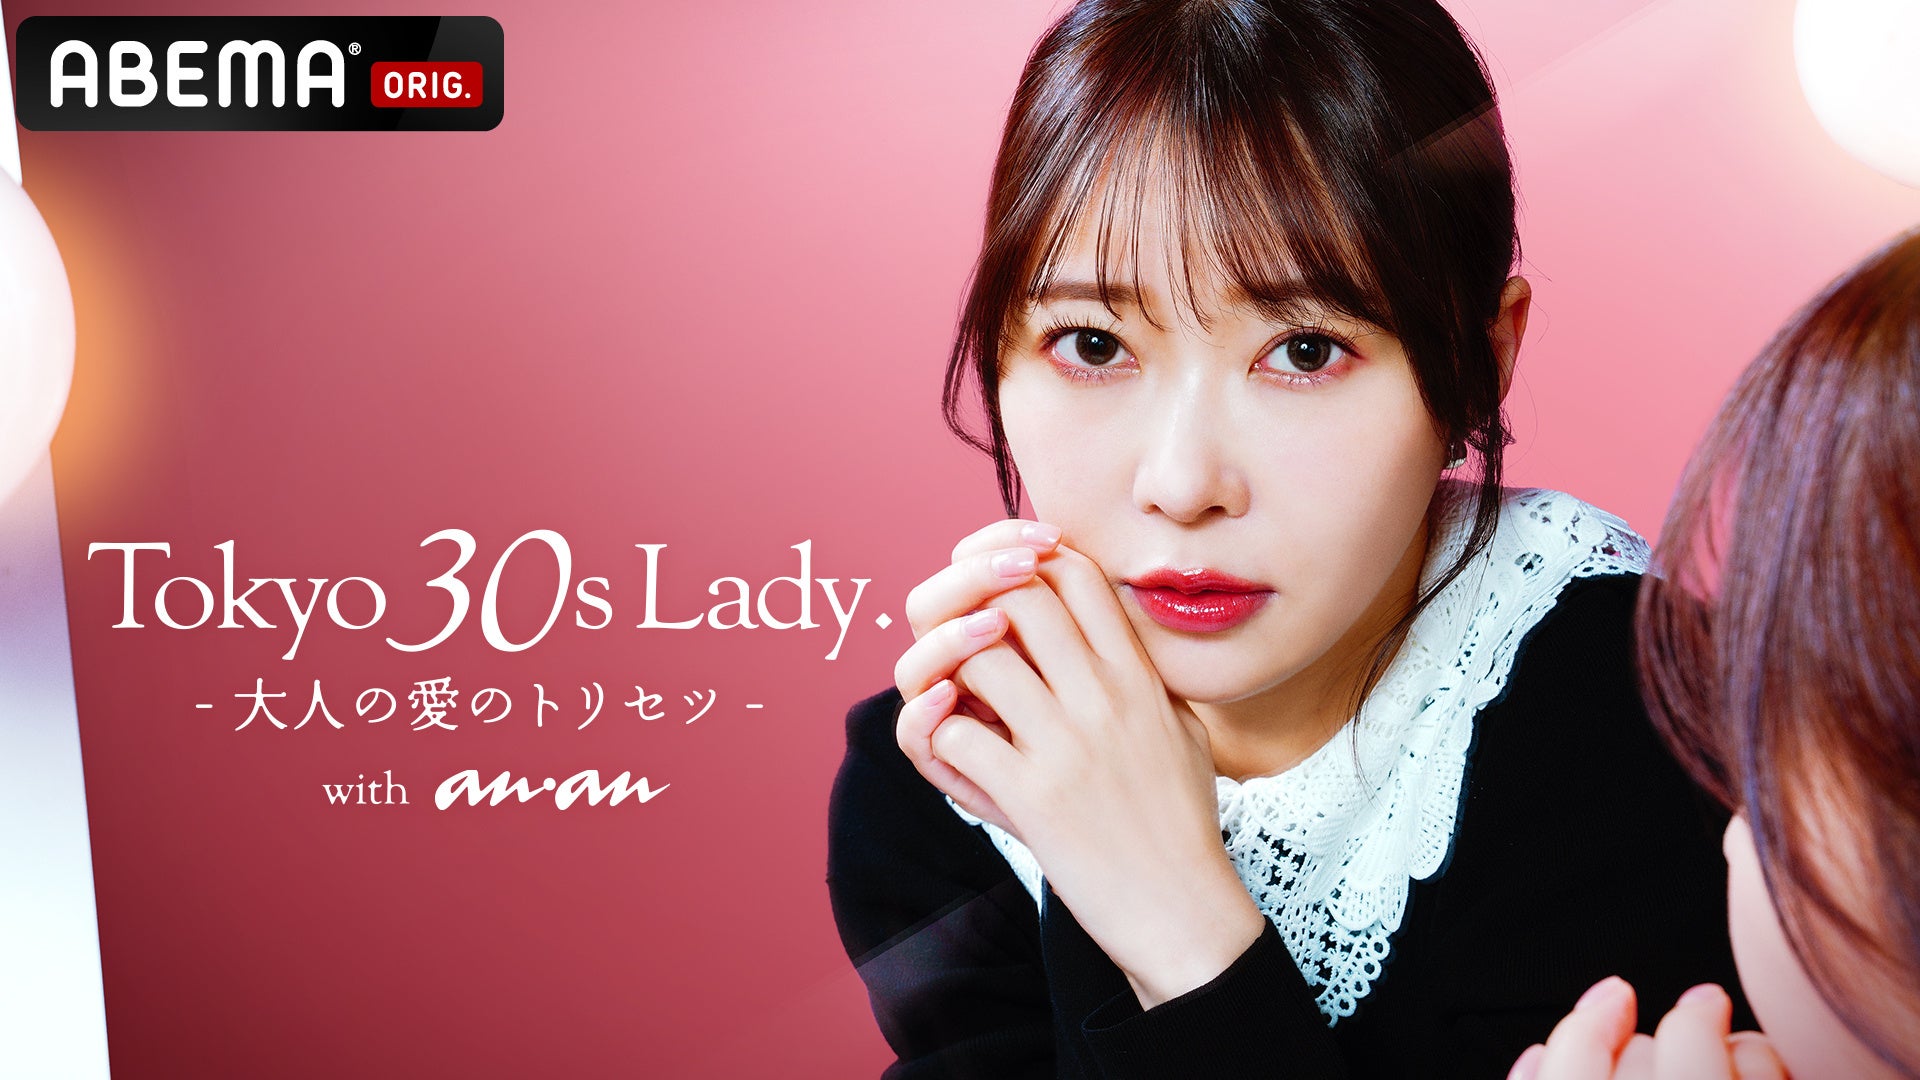 「ABEMA」が「anan」と共同制作の特別番組『Tokyo 30s Lady. – ⼤⼈の愛のトリセツ – with anan』を放送決定！MC指原莉乃「女子会にいるような気持ちで見て」